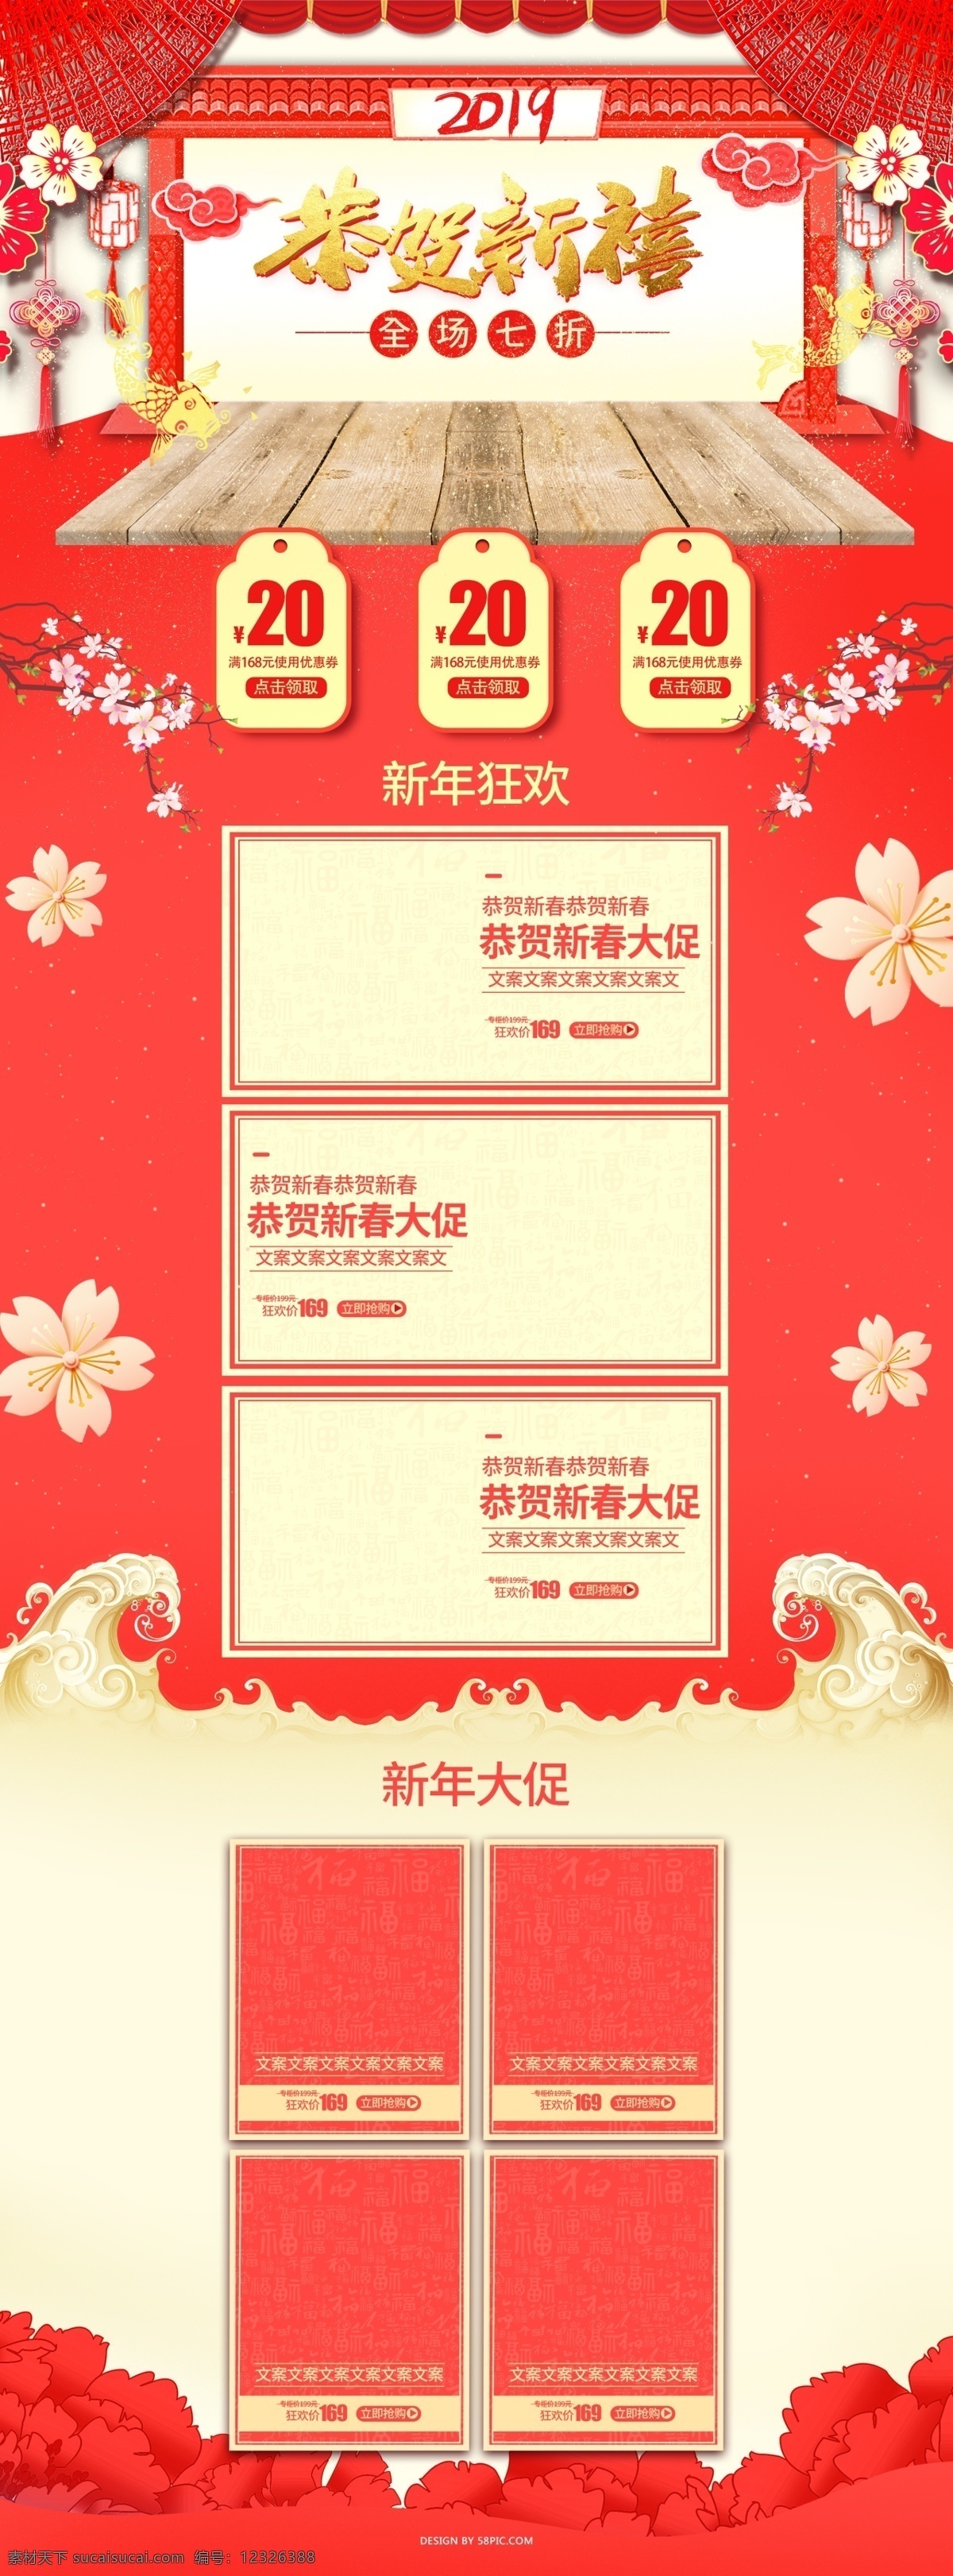 2019 新年 首页 中国 风 喜庆 风格 春节 红色 食品 美食 过年 茶饮